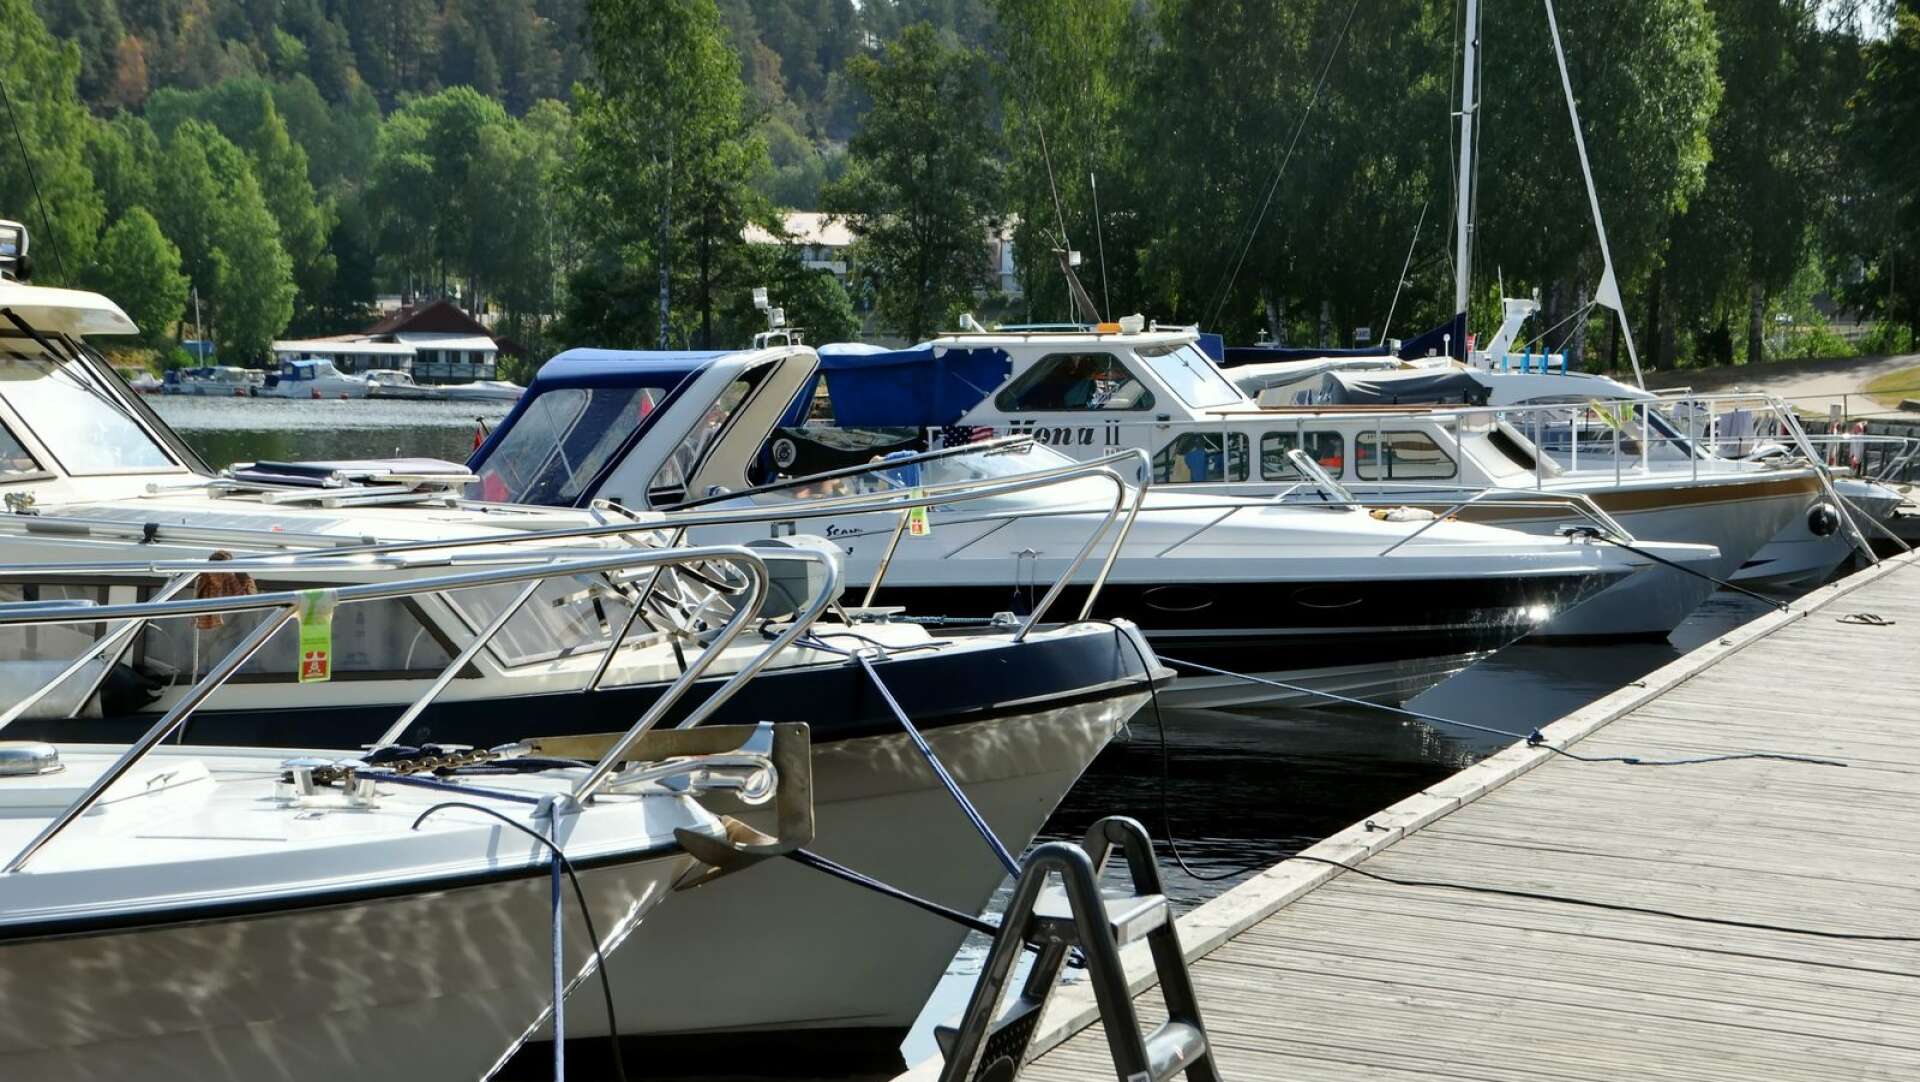 En vanlig sommardag i Bengtsfors gästhamn brukar det finnas massor av små och stora båtar att titta på.